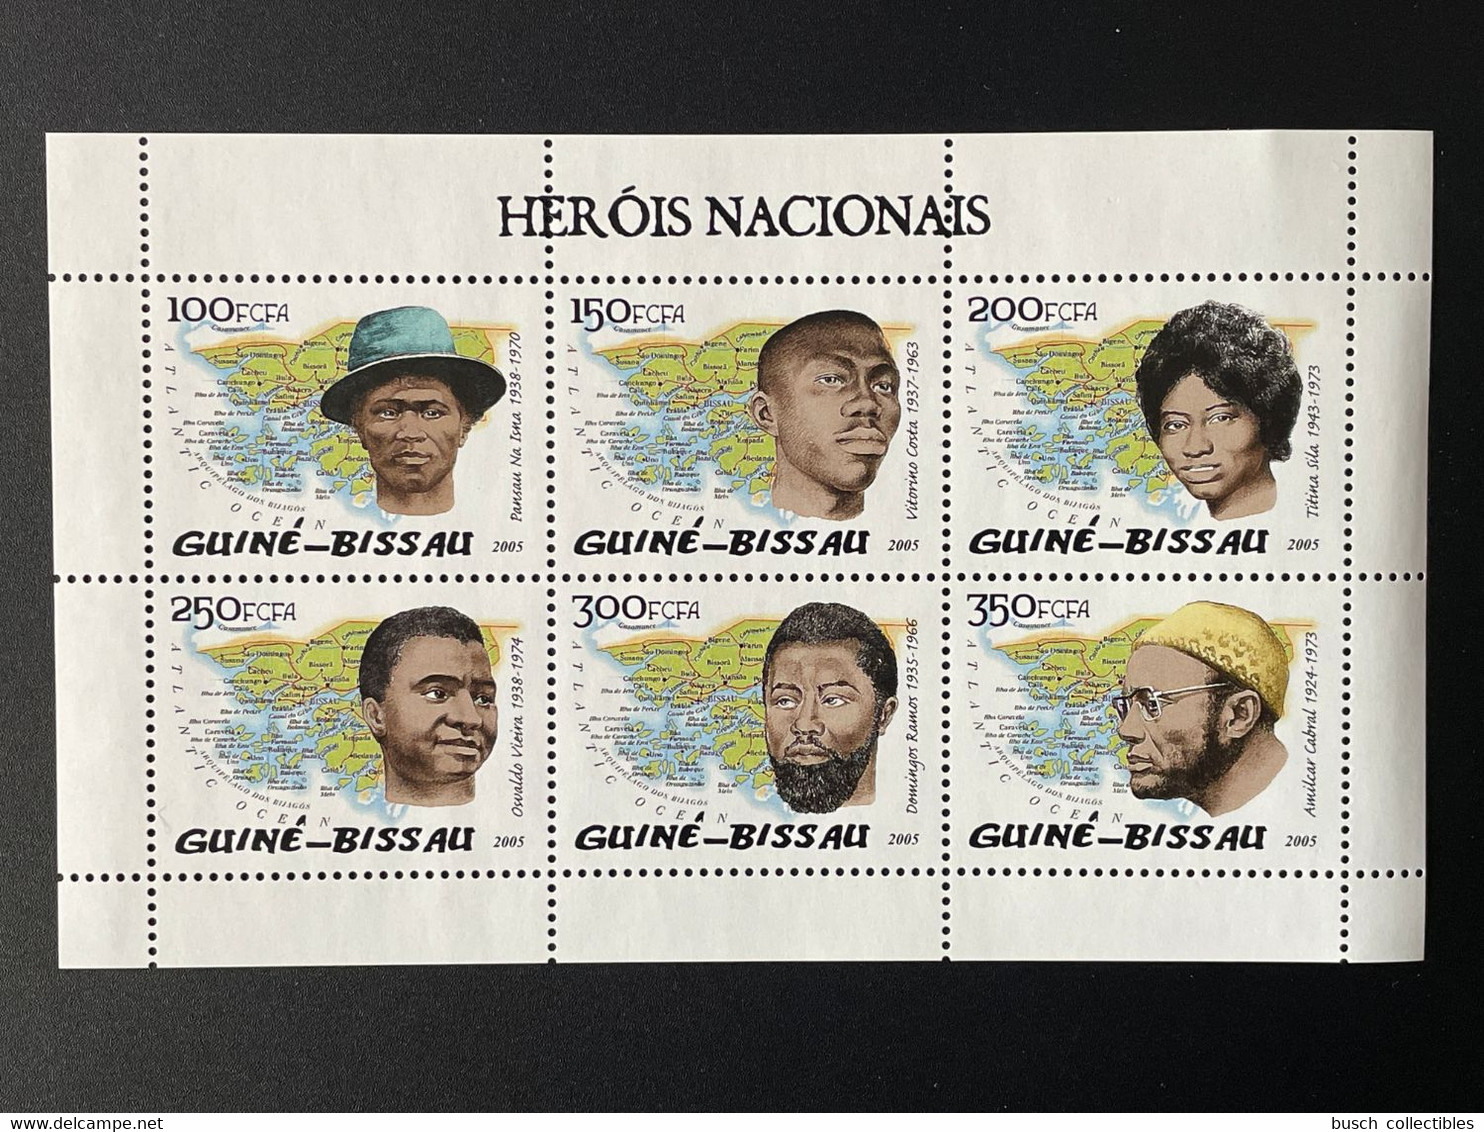 Guiné-Bissau Guinea Guinée 2005 Mi. 3196 - 3201 Herois Nacionais Héros Helden Amilcar Cabral Vieira Ramos - Guinea-Bissau